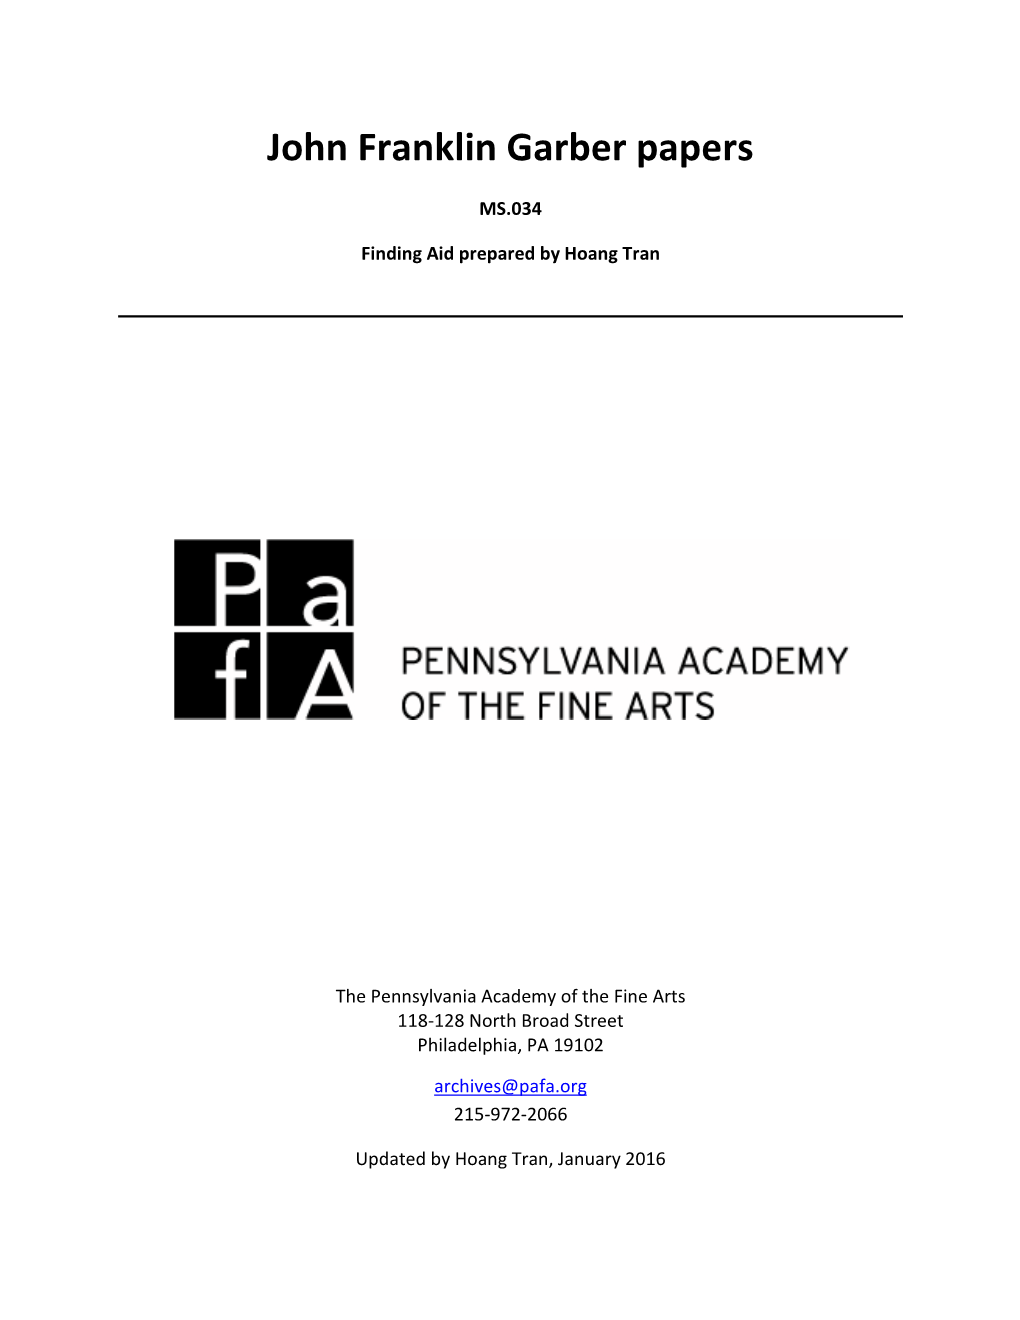 John Franklin Garber Papers